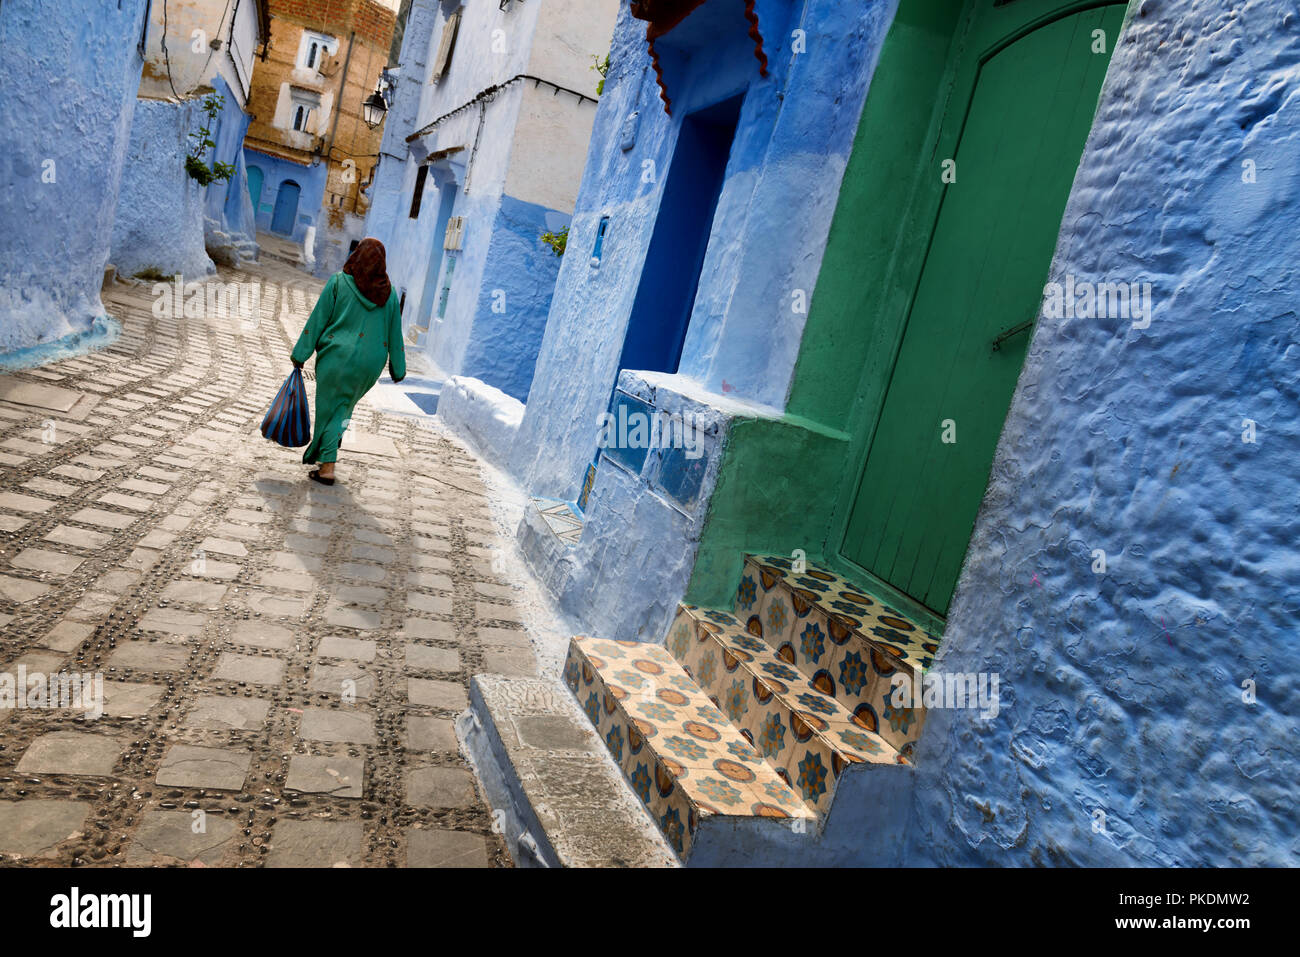 Un traditionnel habillé femme marocaine promenades dans la vieille ville (médina) de Chefchaouen au Maroc. Banque D'Images